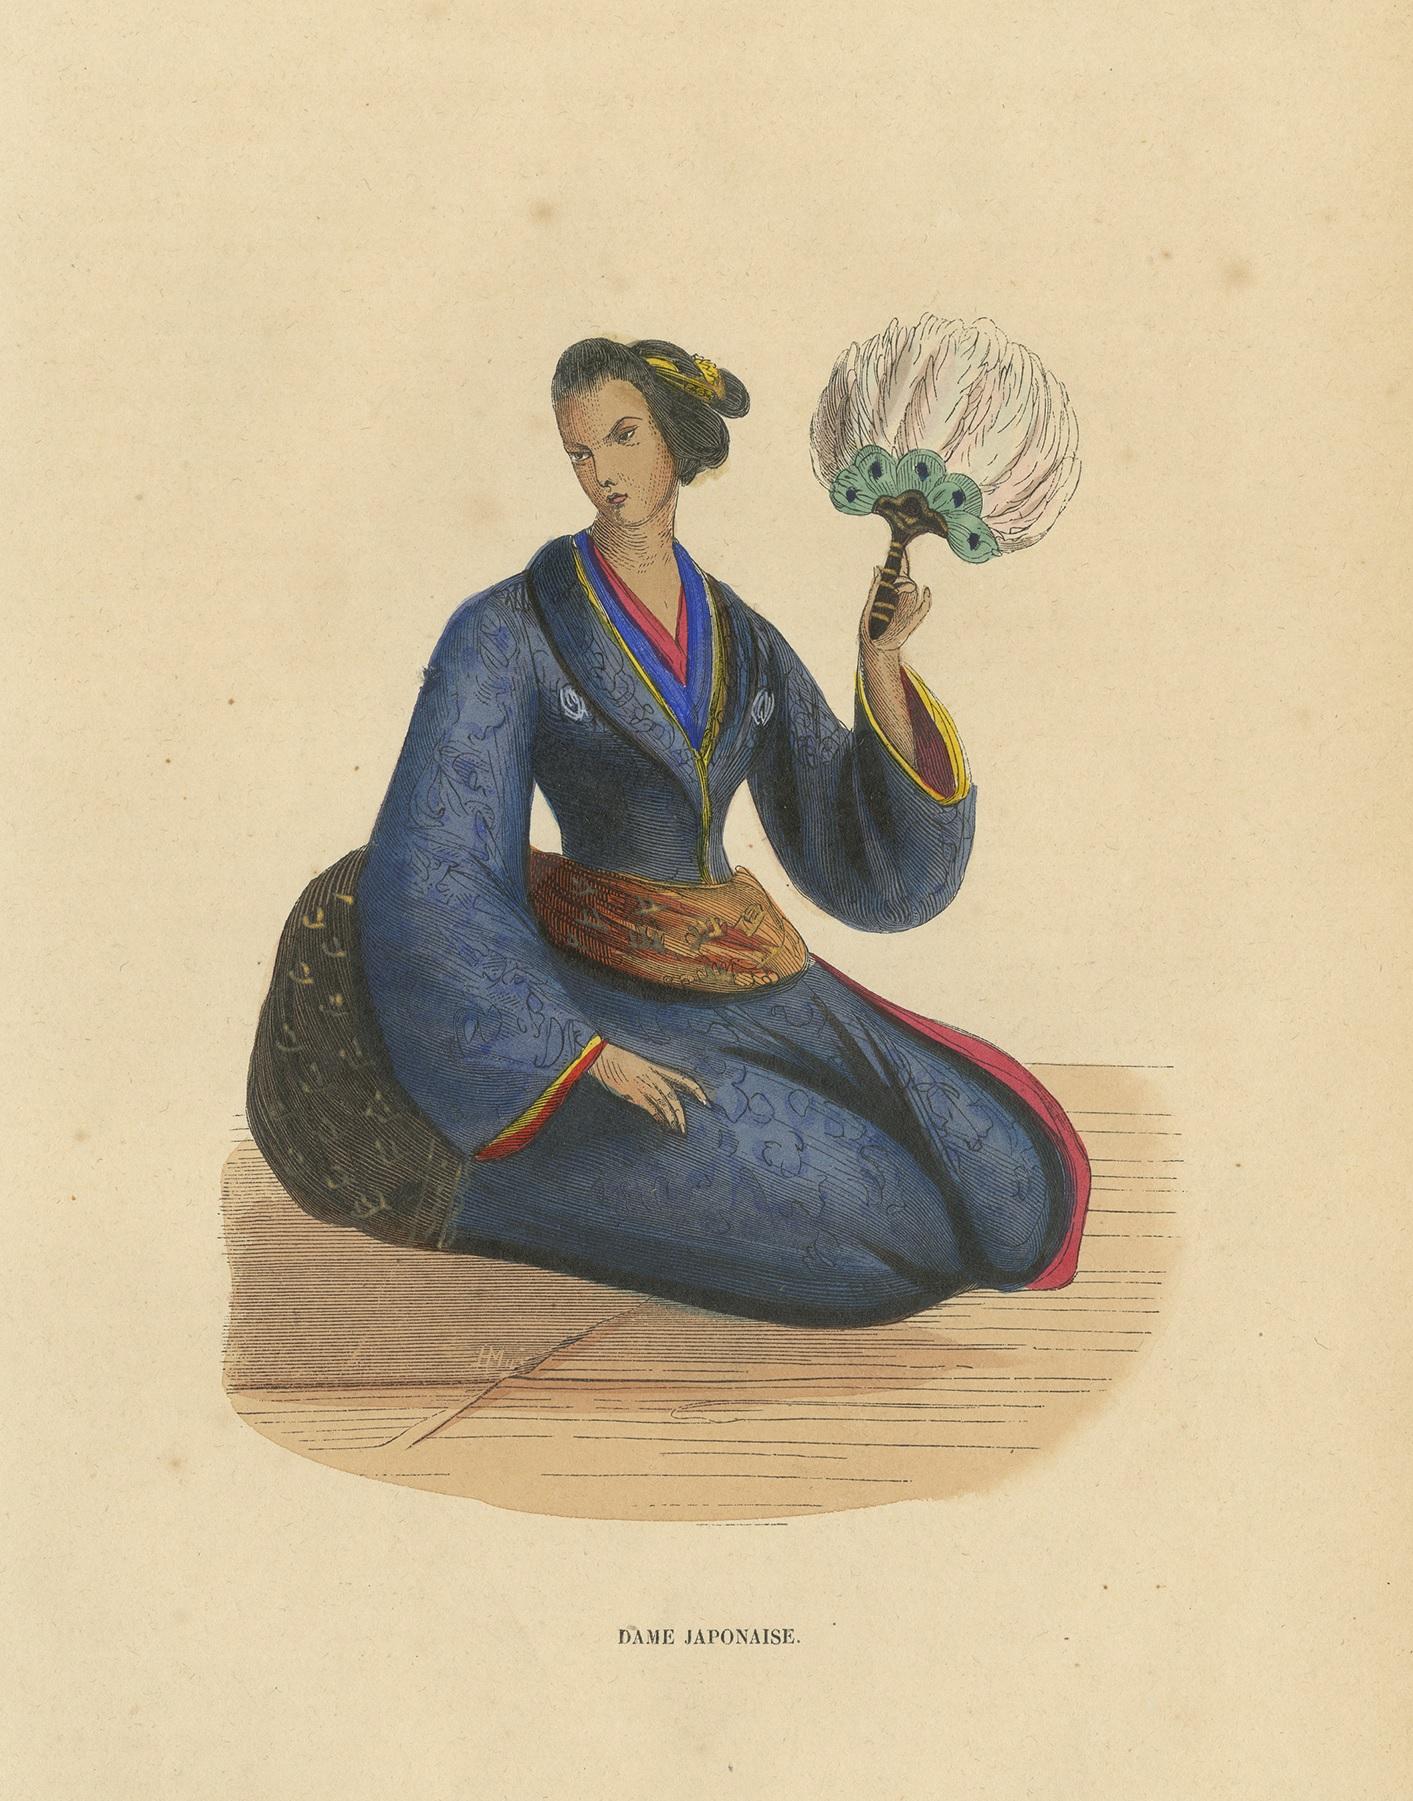 Antique print titled 'Dame Japonaise'. Lithograph of a Japanese lady. This print originates from 'Moeurs, usages et costumes de tous les peuples du monde' by Auguste Wahlen.